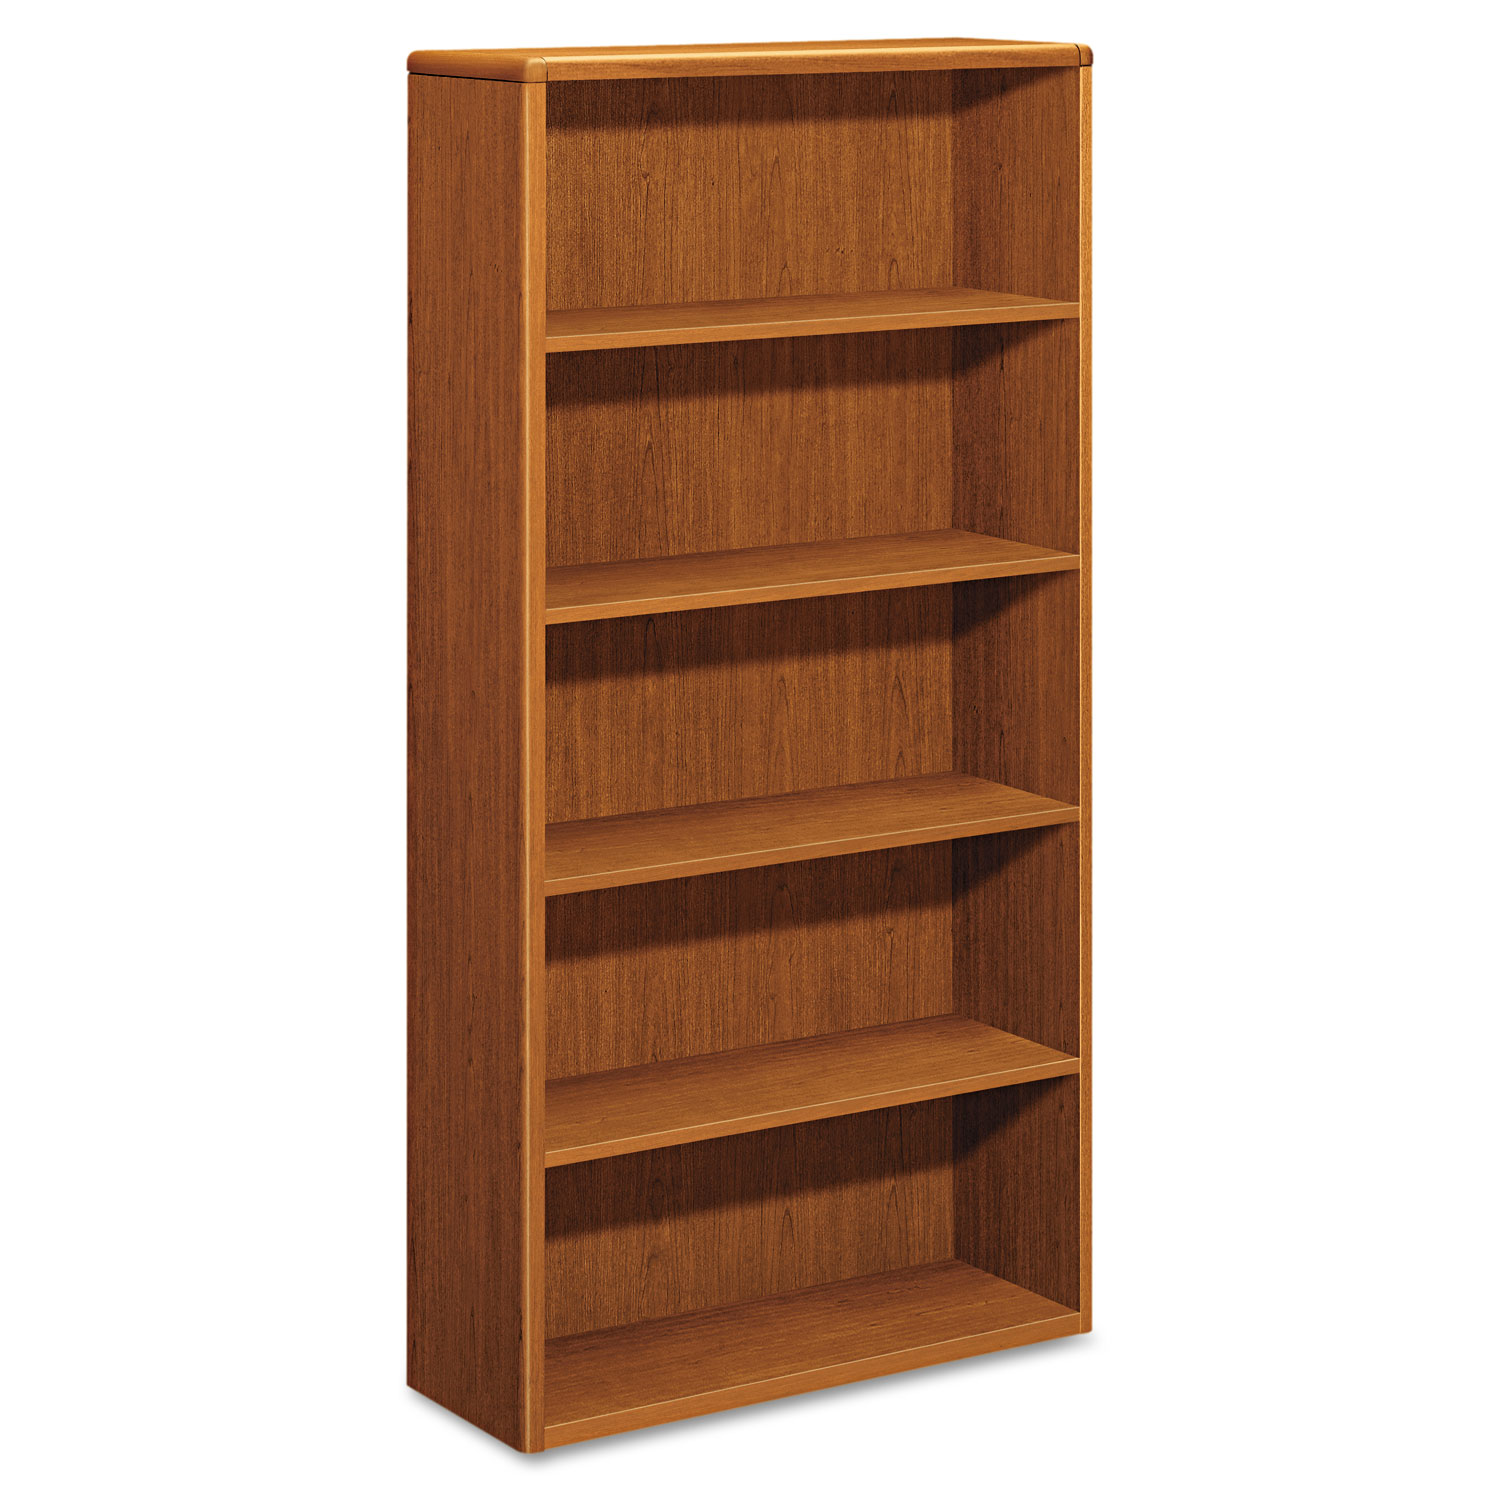  HON H10755.HH 10700 Series Wood Bookcase, Five Shelf, 36w x 13 1/8d x 71h, Bourbon Cherry (HON10755HH) 